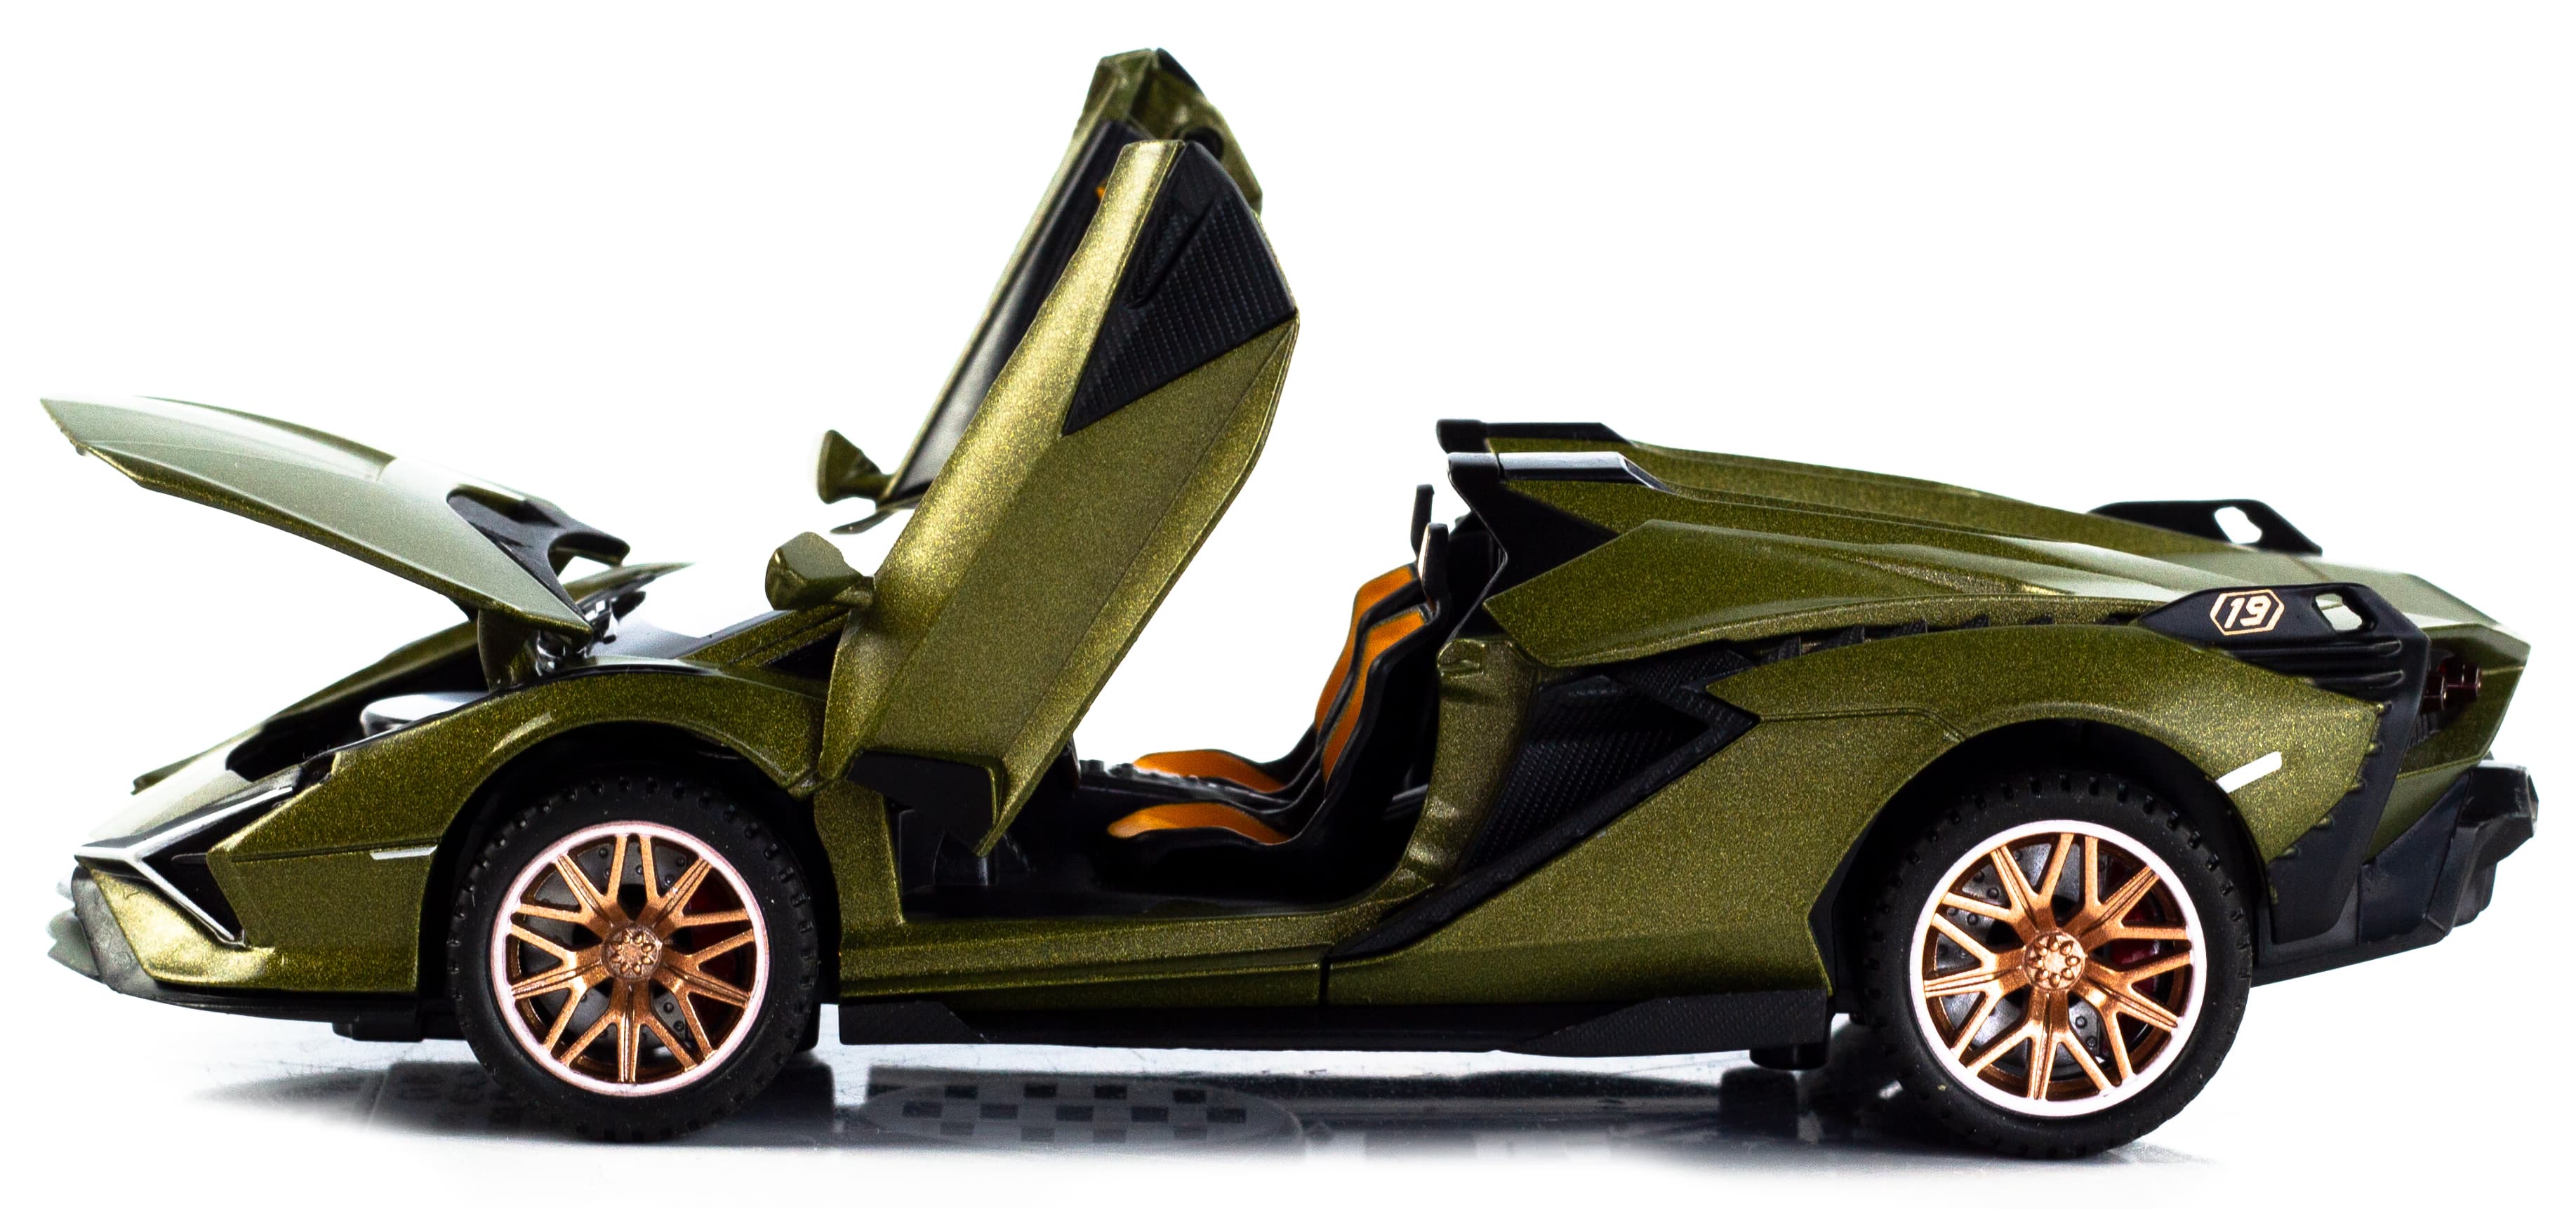 Металлическая машинка Double Horses 1:32 «Lamborghini Sian FKP 37 Roadster» 32661 свет и звук, инерционная / Зеленый